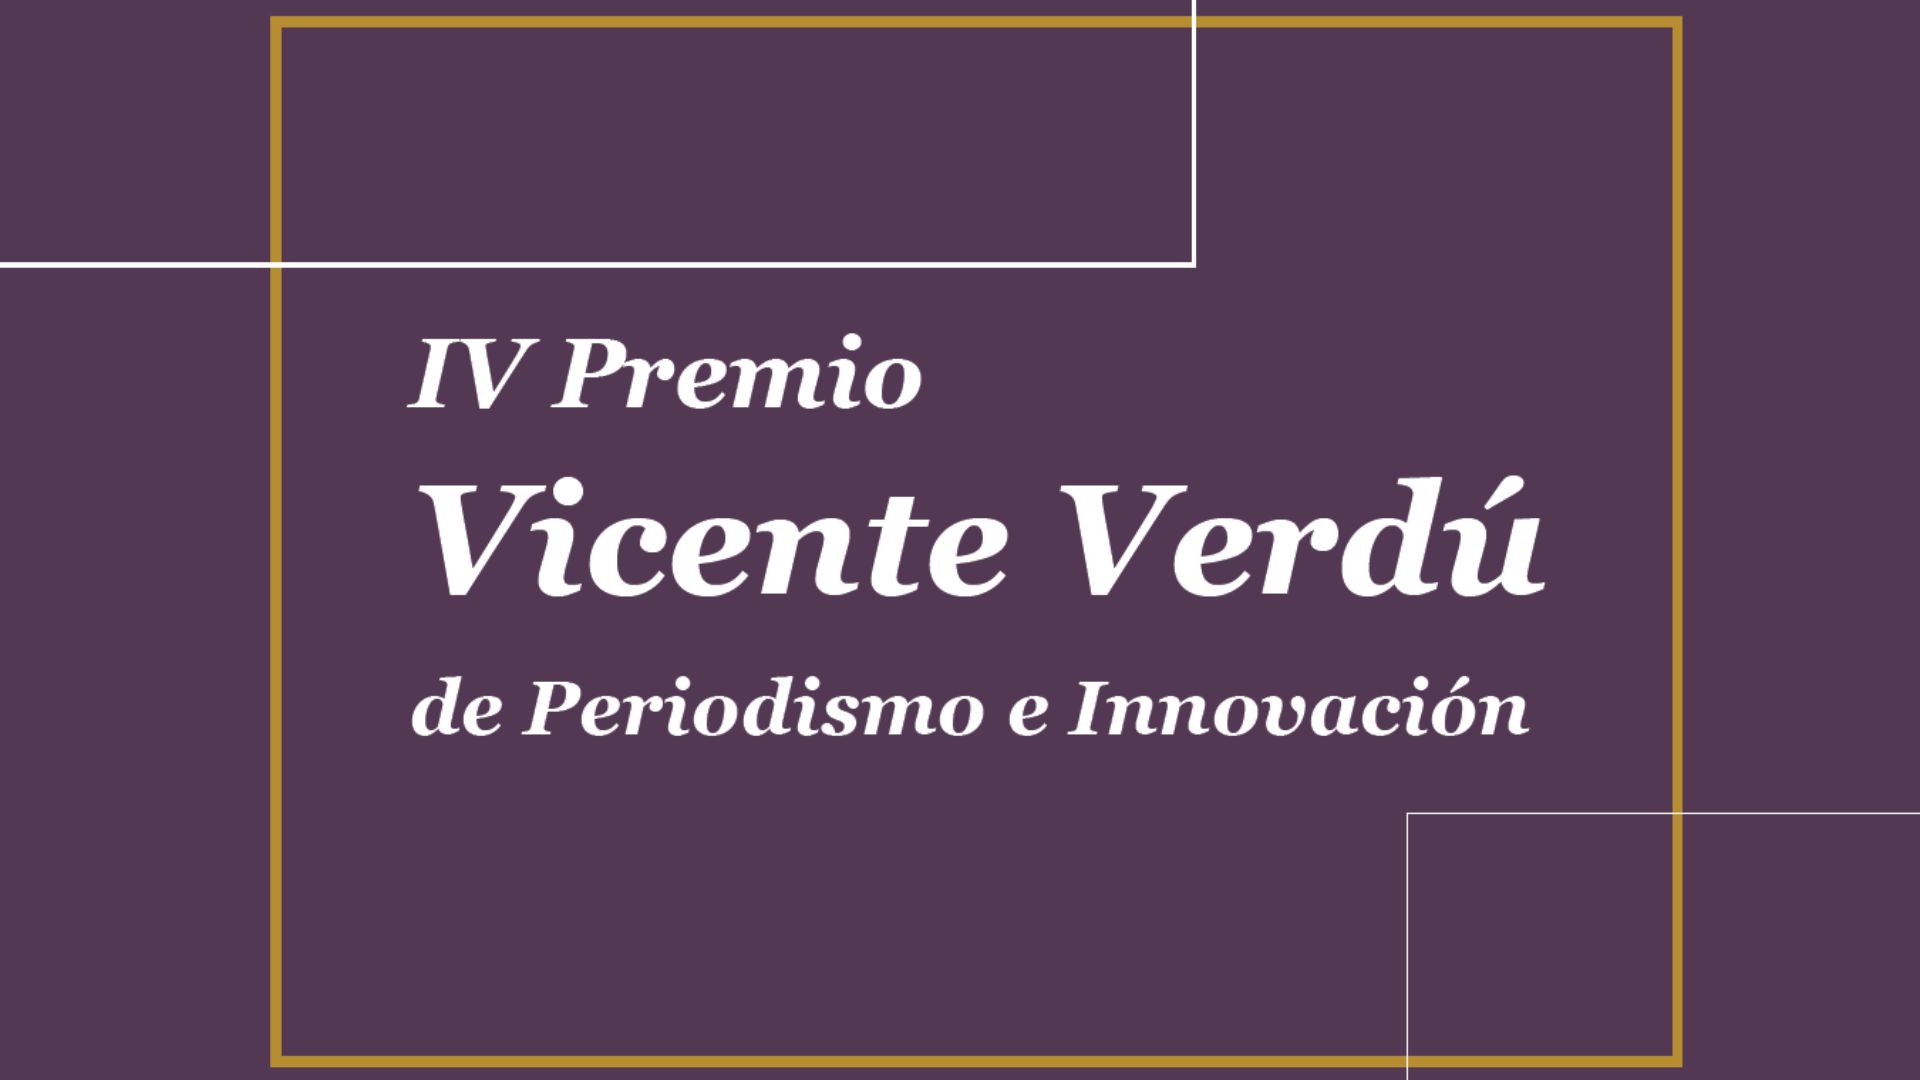 La Asociación de Informadores de Elche convoca el IV Premio Vicente Verdú de Periodismo e Innovación